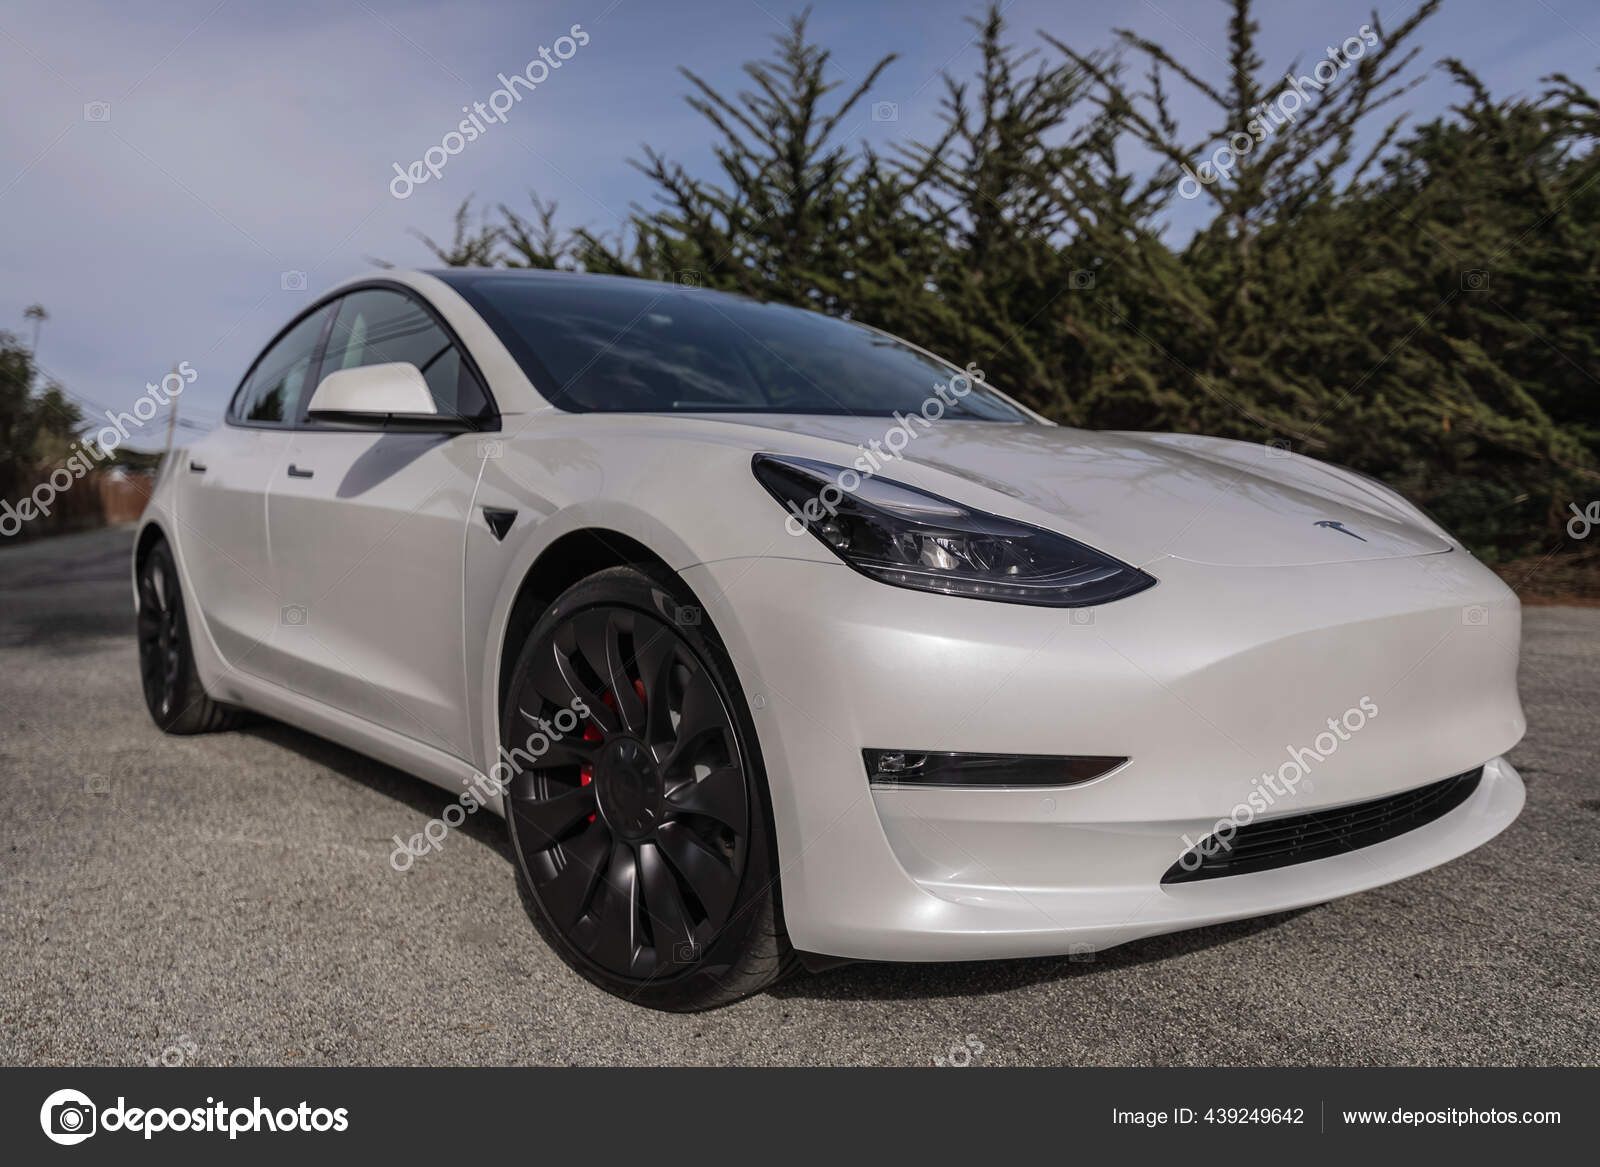 Electric GT: corrida com Model S da Tesla começa em 2018